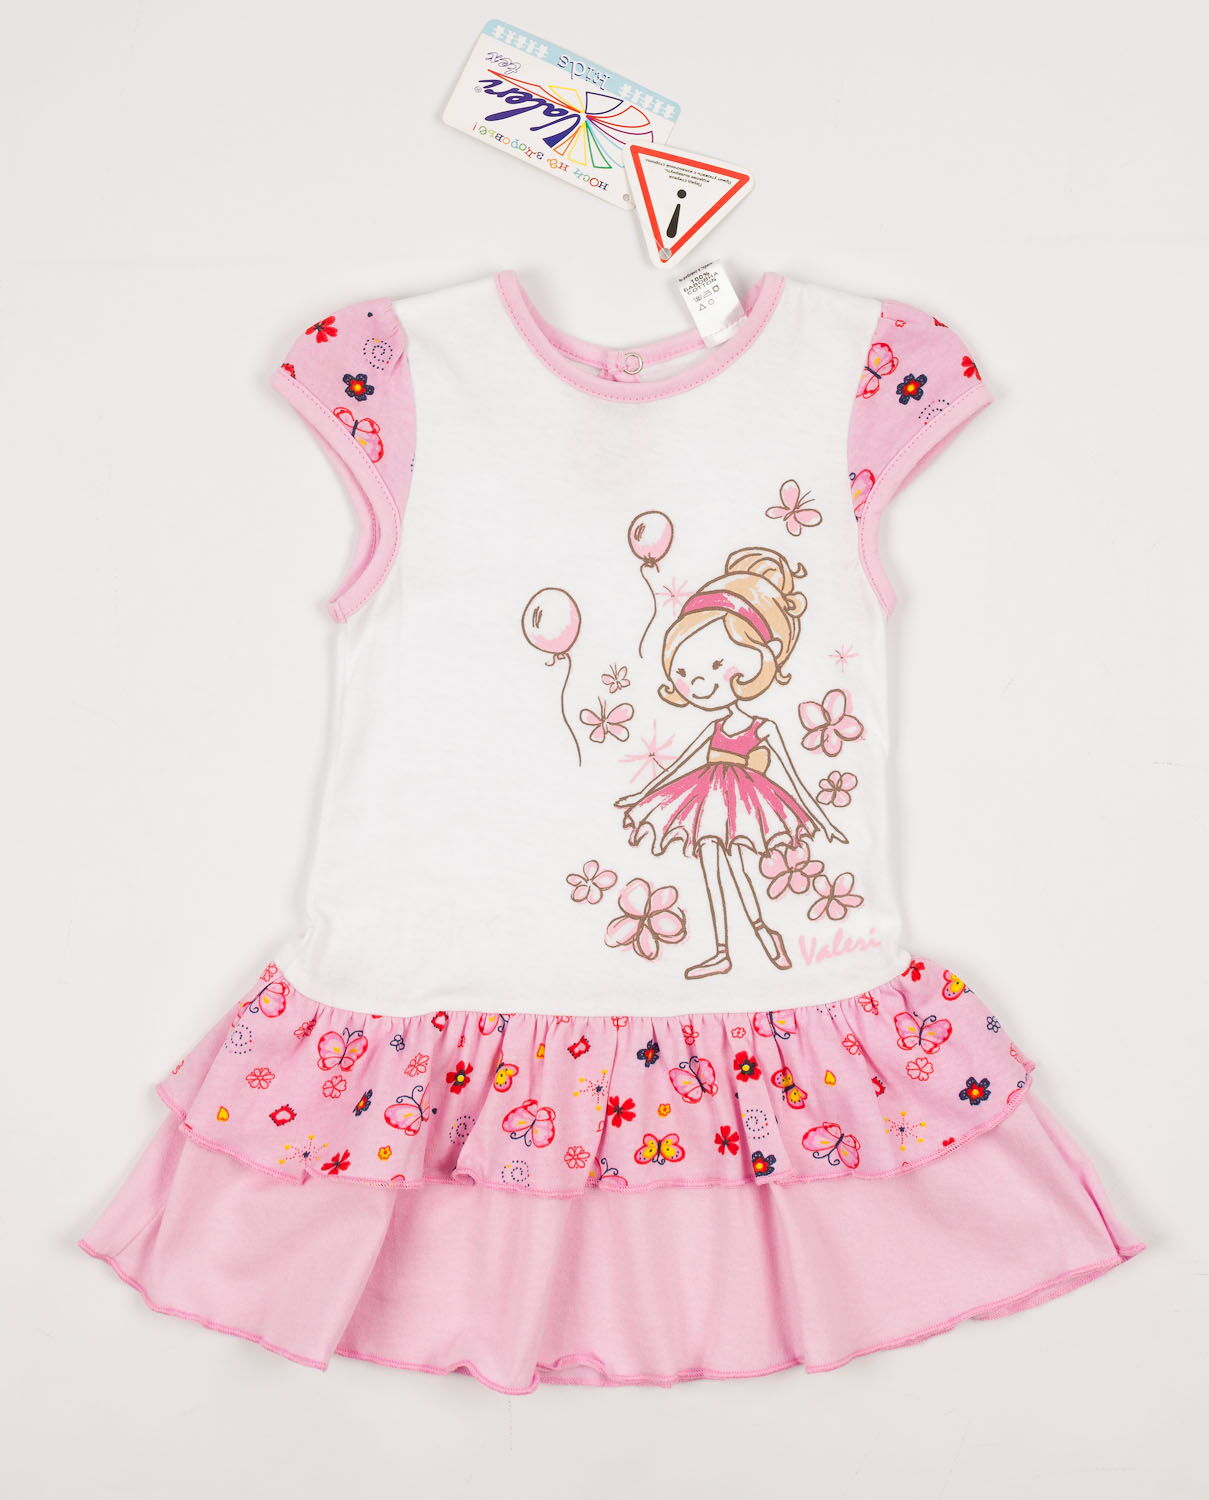 Платье для девочки Valeri tex розовое 1803-55-024 - цена